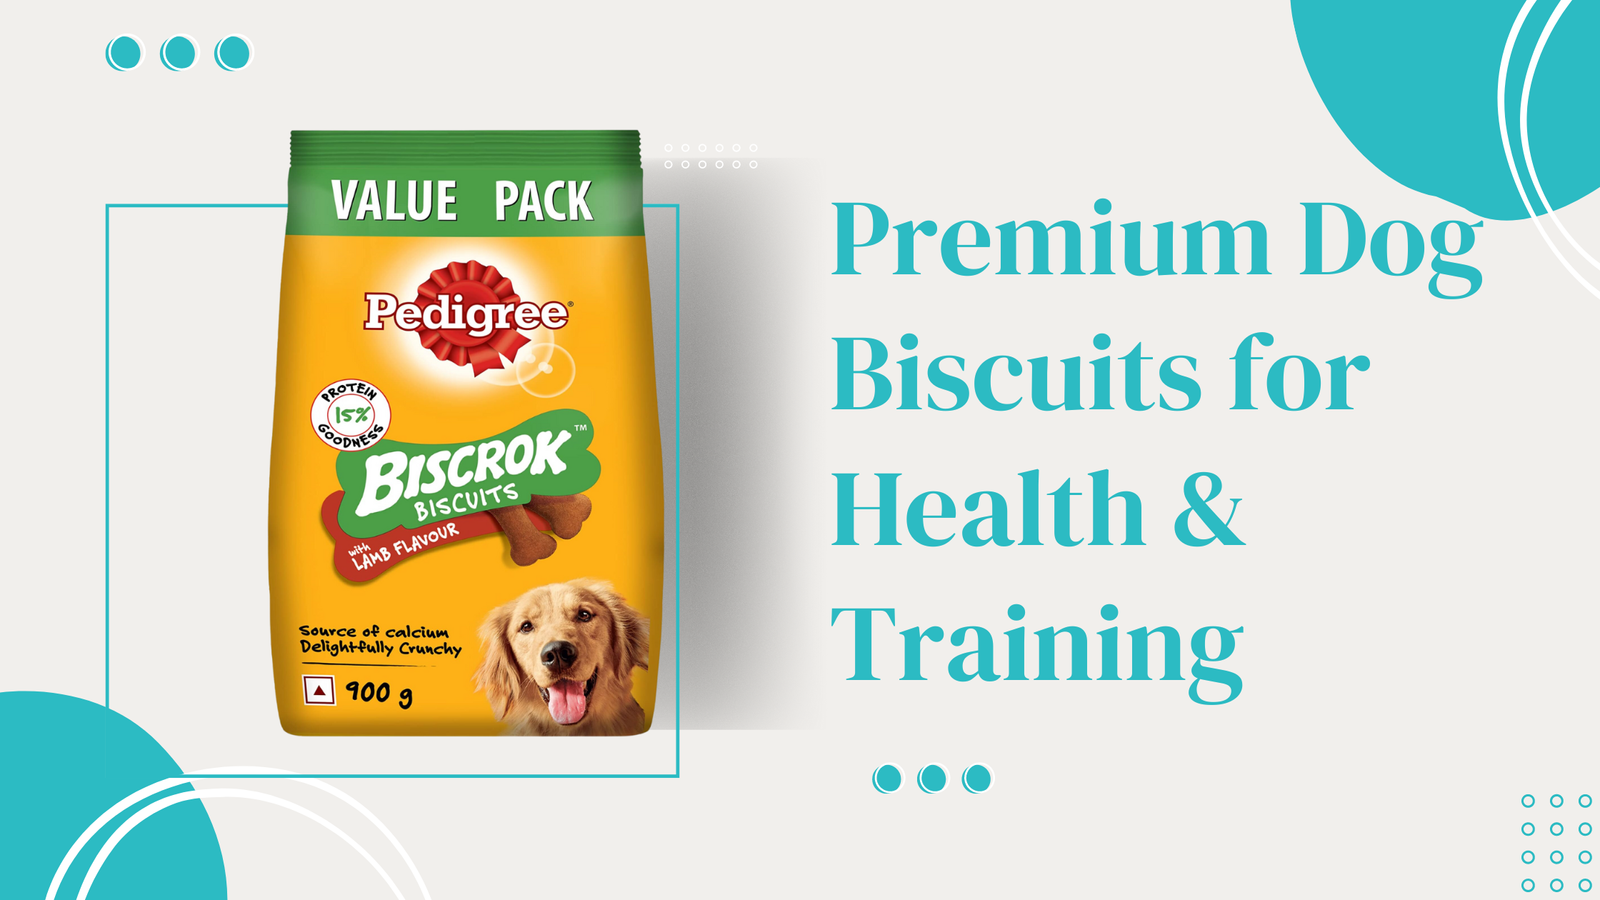 Premium Dog Biscuits for Health & Training - Chicken Flavor